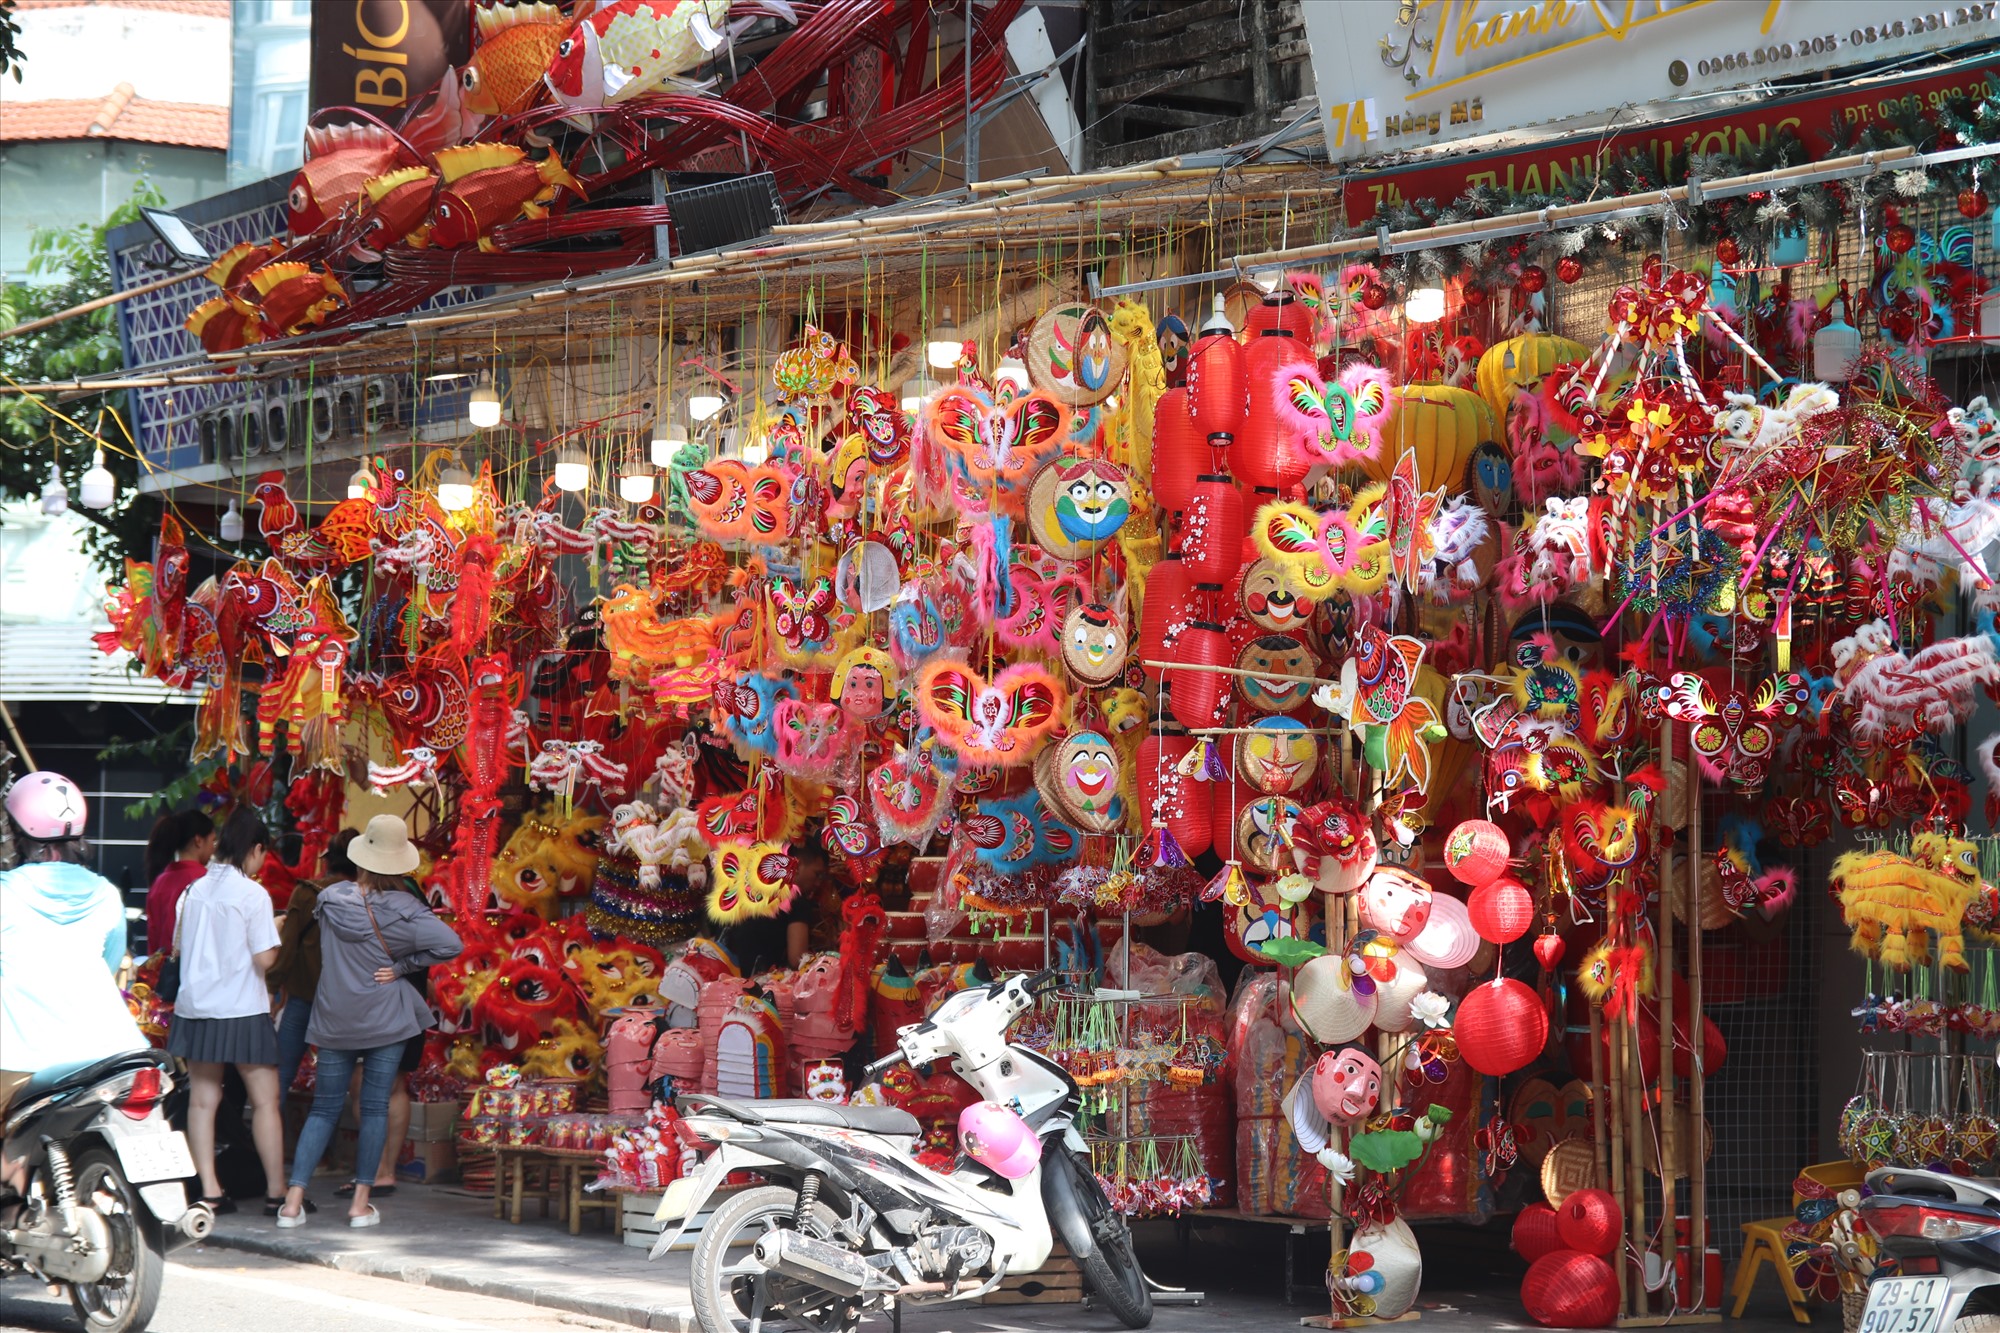 Hàng Mã là một trong những con phố nằm trong khu phố cổ của người Hà Nội. Nơi đây, nổi tiếng với sản phẩm thủ công truyền thống, đồ trang trí bằng giấy. Do vậy, trước Rằm tháng Tám, nơi đây lại kinh doanh các loại đồ chơi trẻ em phục vụ Tết Trung thu.